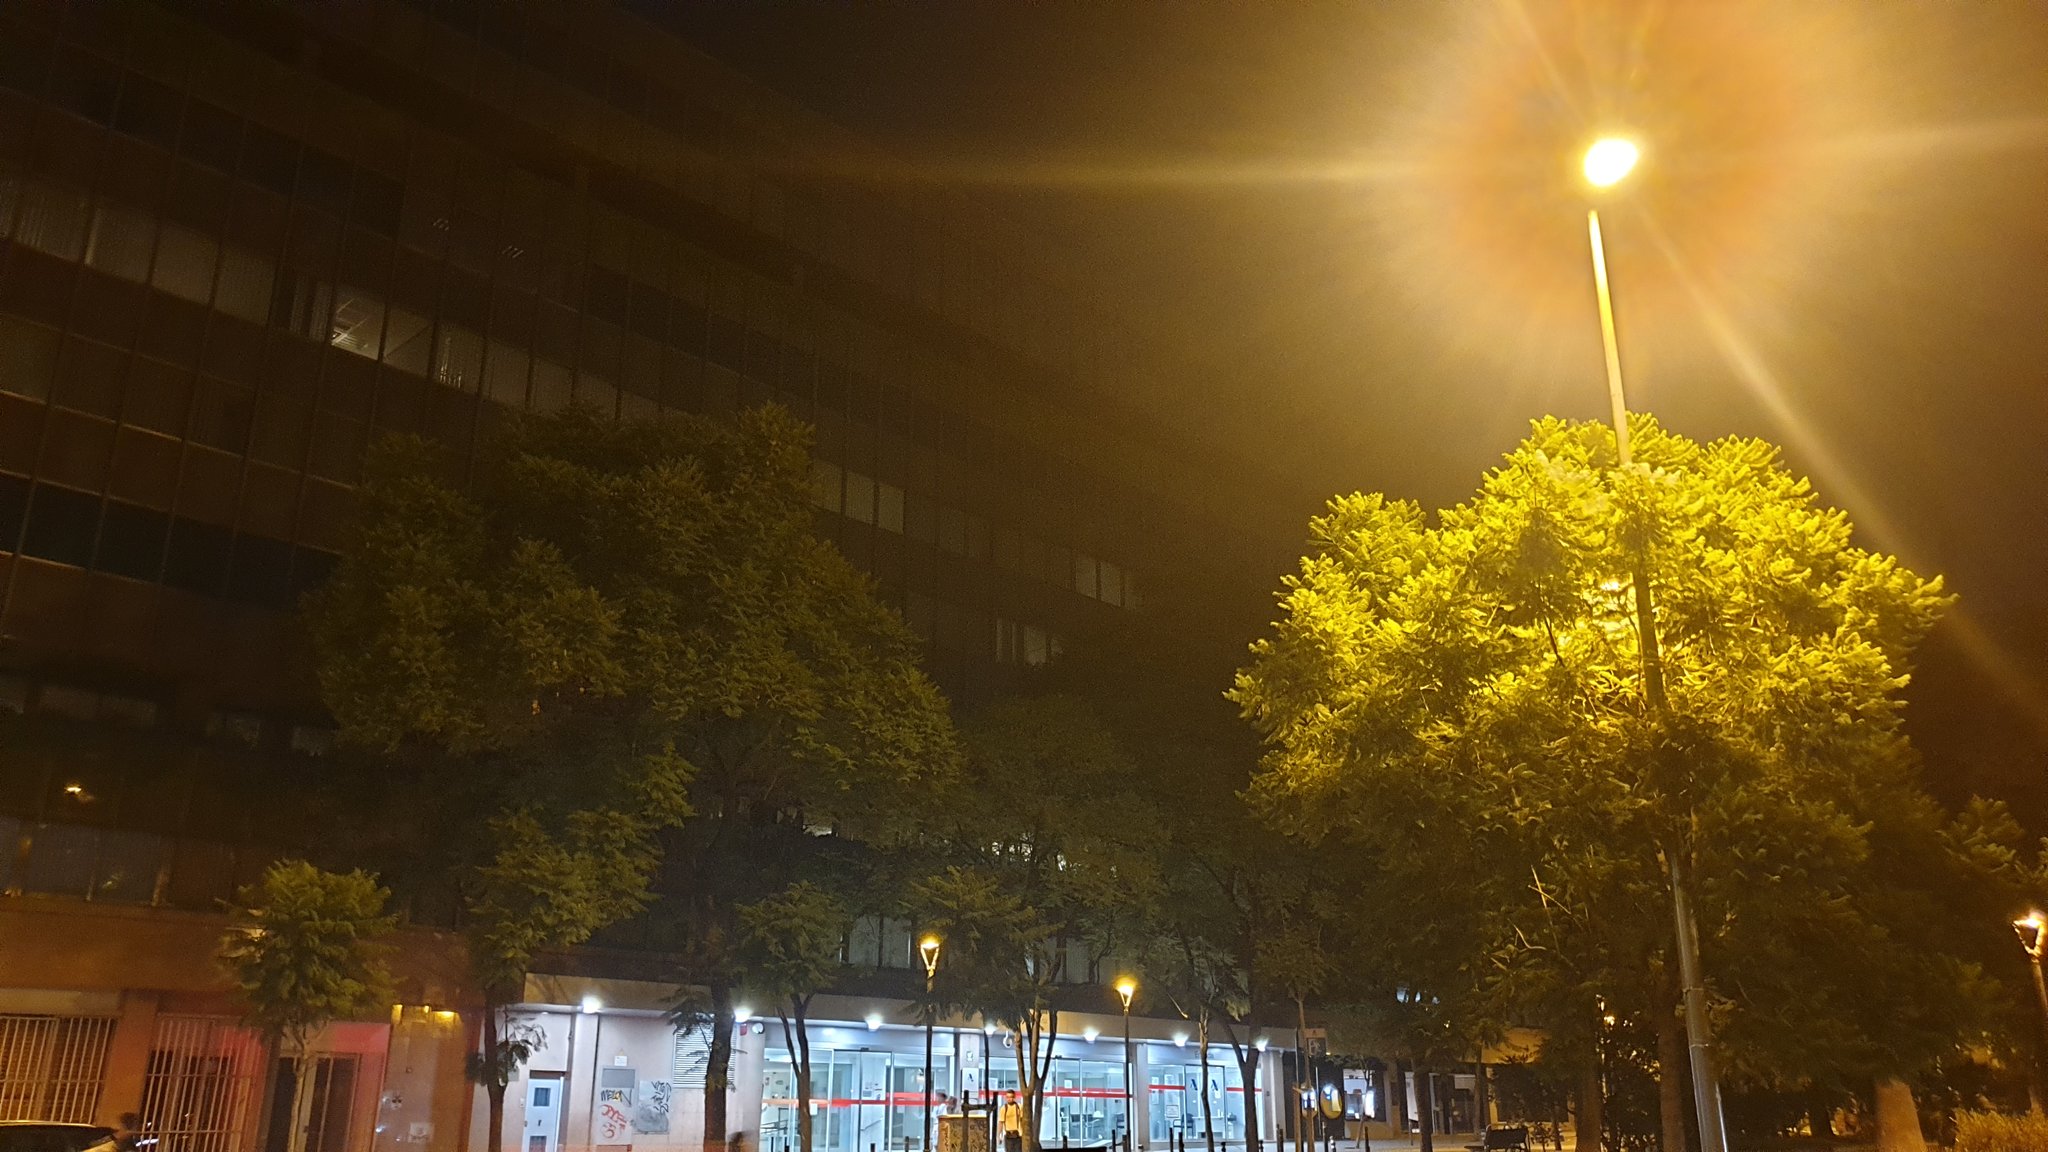 Carles Enric on Twitter: "Y como curiosidad tampoco ha apagado las luces, sus la sede central de Hacienda en Barcelona. Si se entera la Chiqui los crujira... https://t.co/fYEnDcvrJH" / Twitter